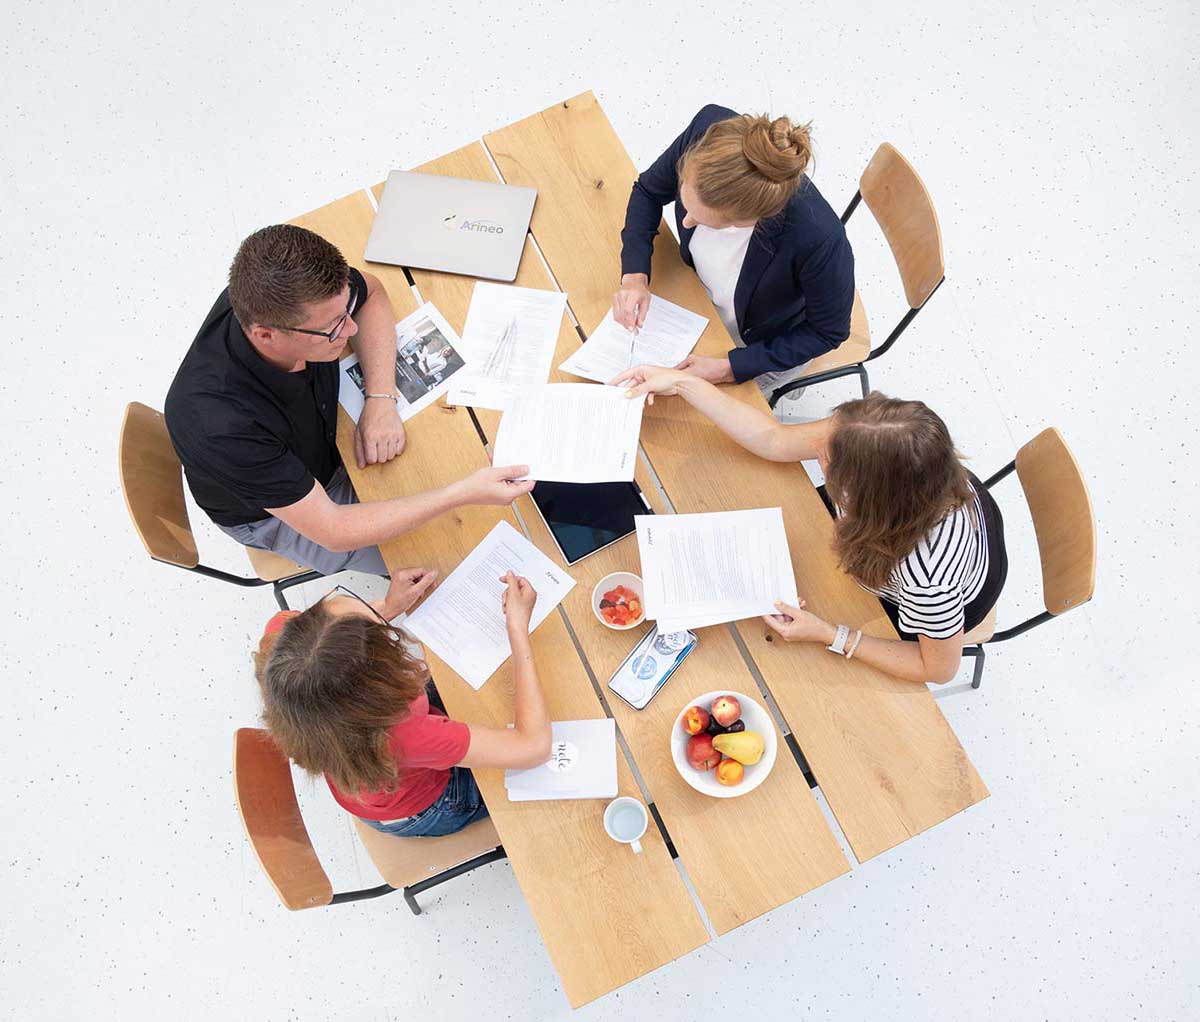 Sicht von oben: vier Menschen sitzen mit Unterlagen an einem Tisch